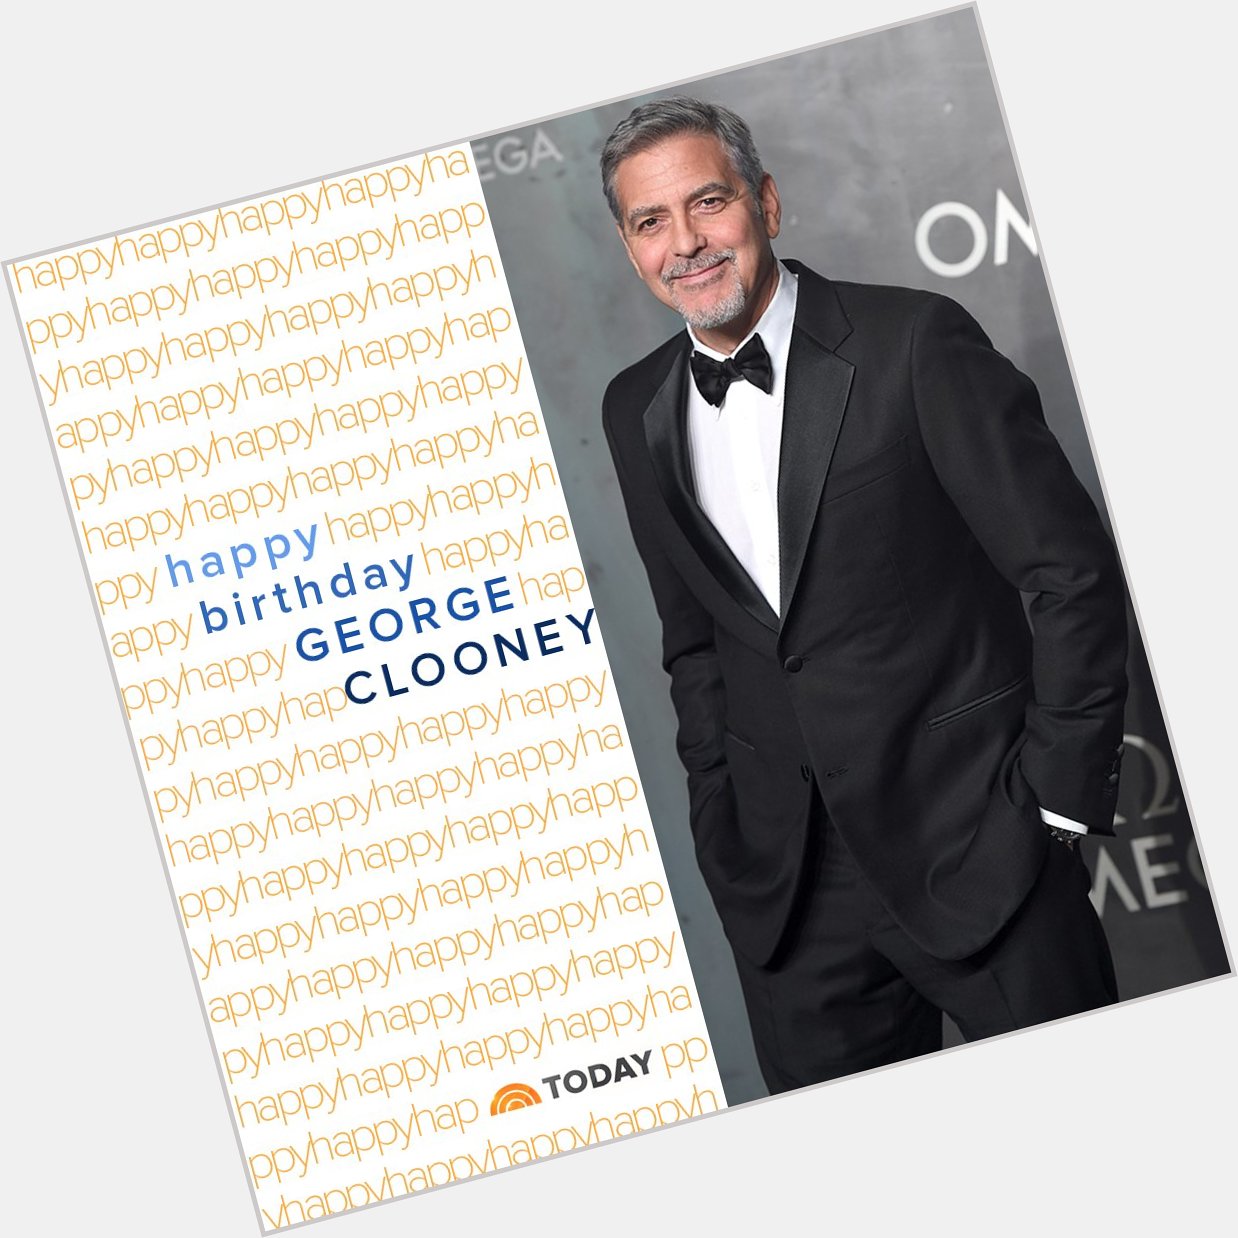 Happy birthday, George Clooney!  